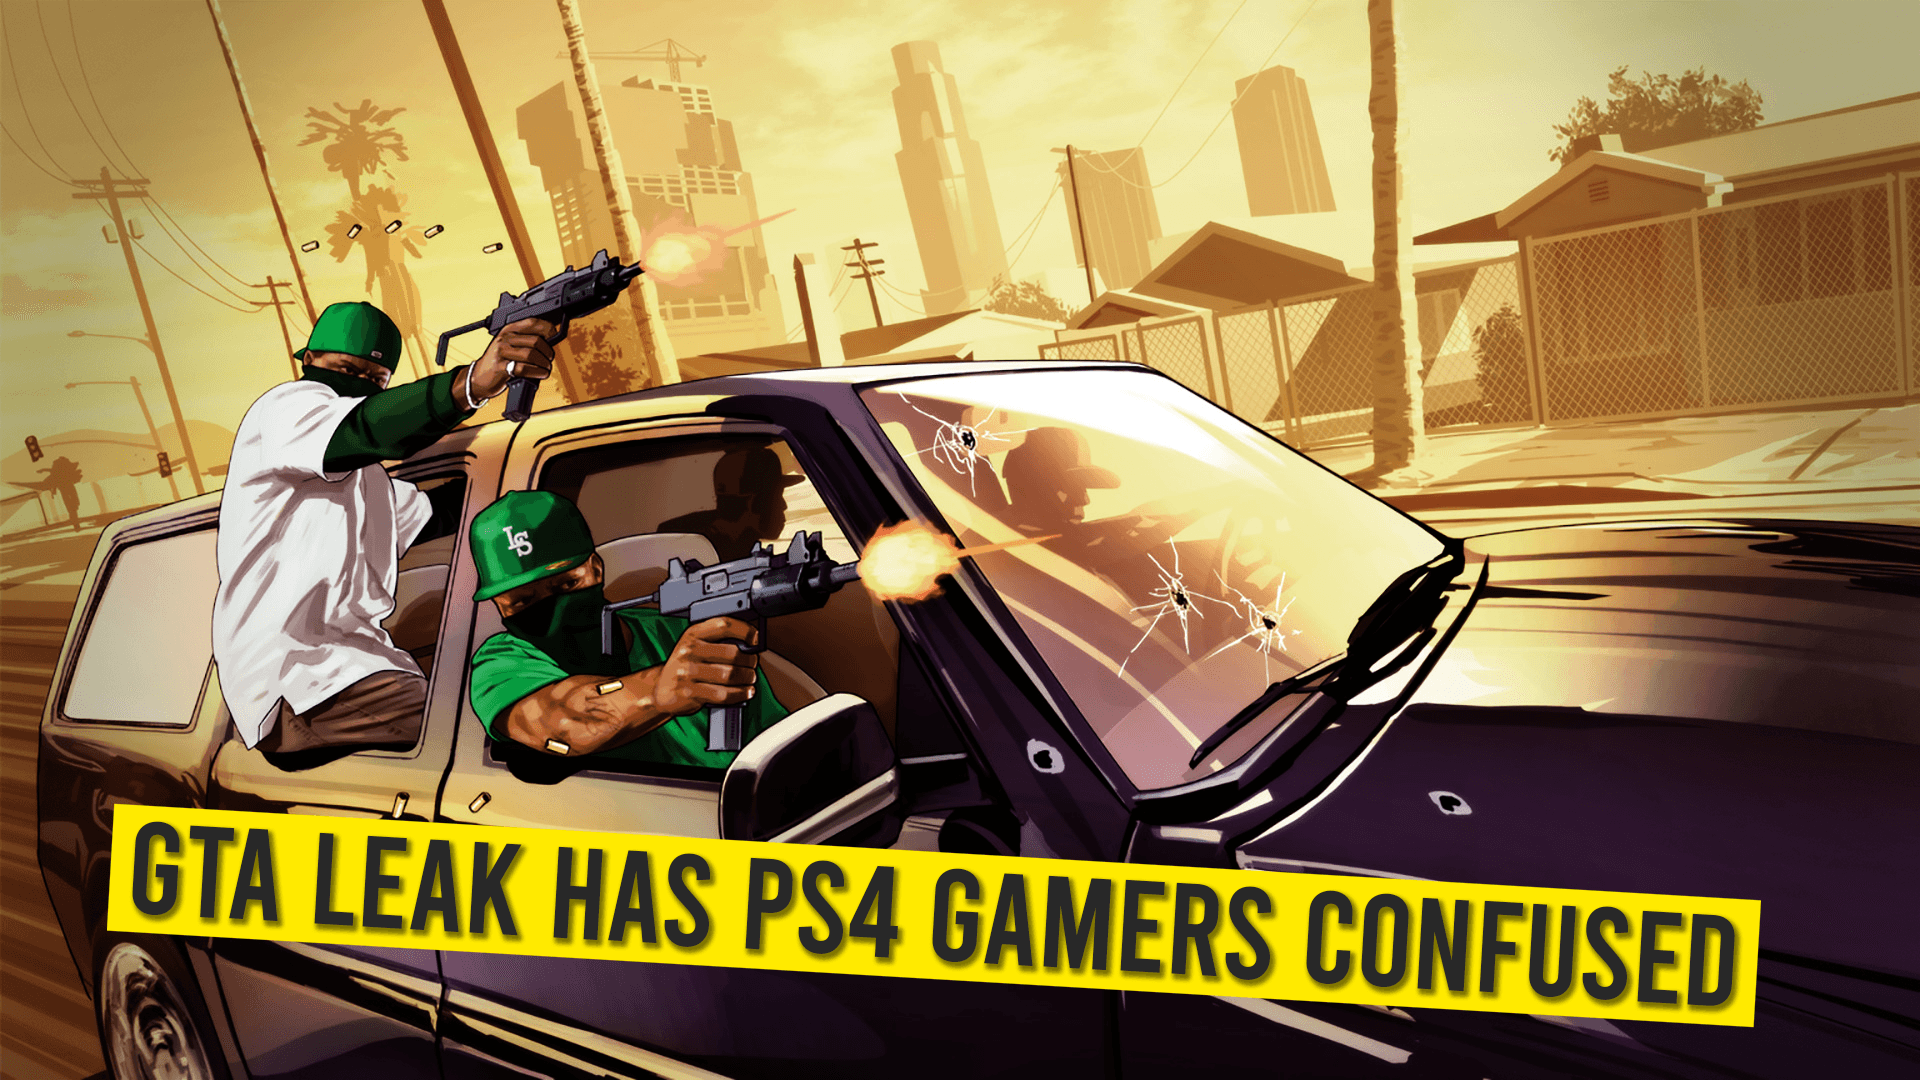 07 GTA Leak Has PS4 Gamers Confused